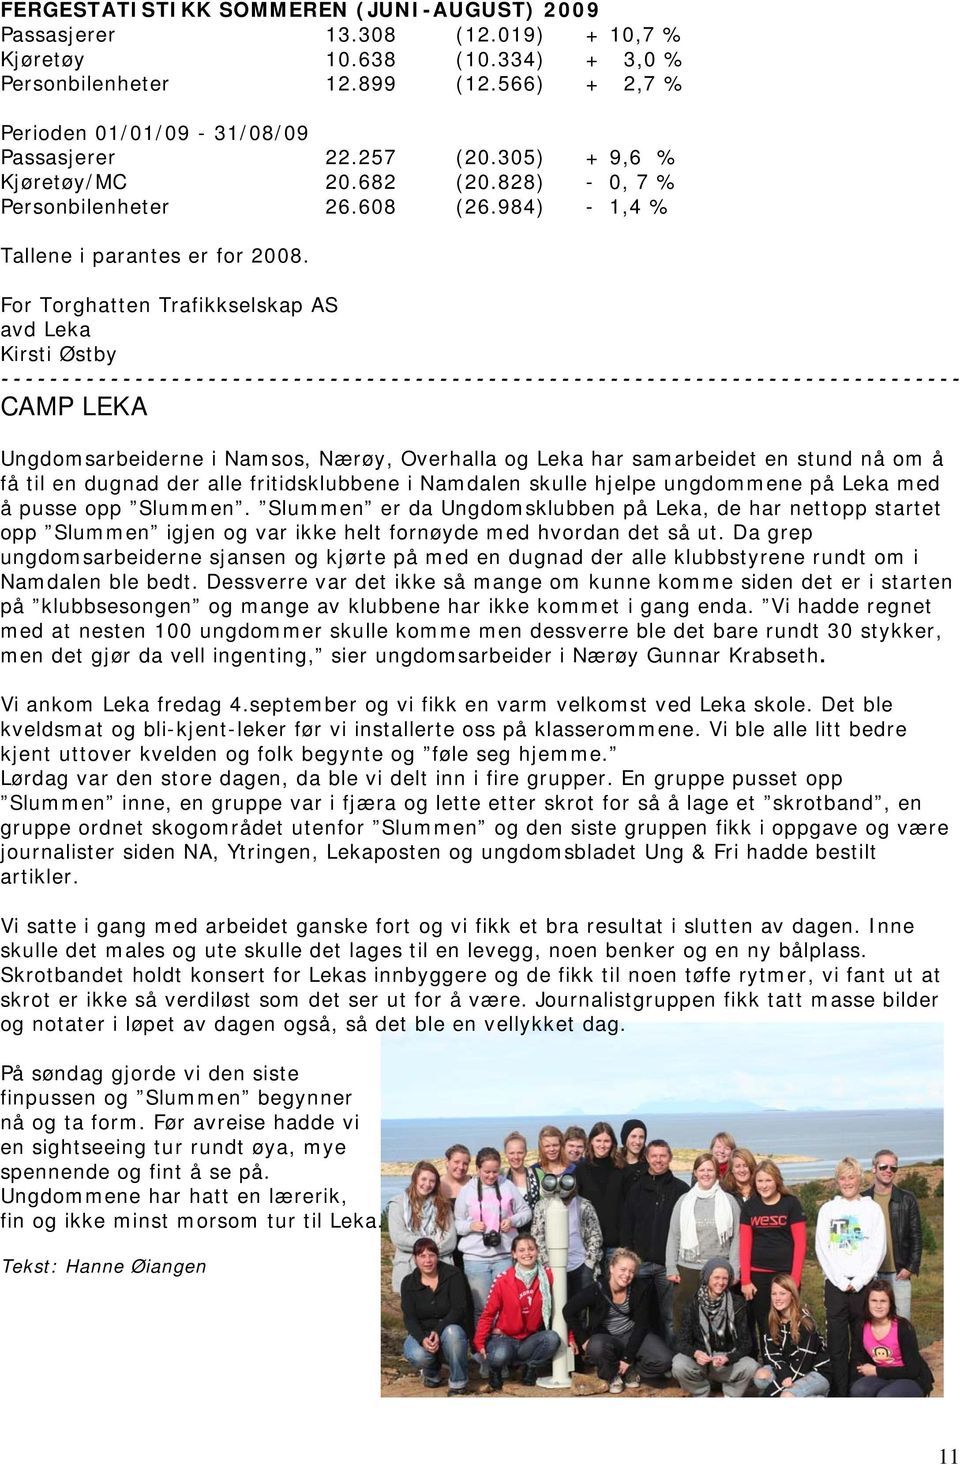 For Torghatten Trafikkselskap AS avd Leka Kirsti Østby CAMP LEKA Ungdomsarbeiderne i Namsos, Nærøy, Overhalla og Leka har samarbeidet en stund nå om å få til en dugnad der alle fritidsklubbene i